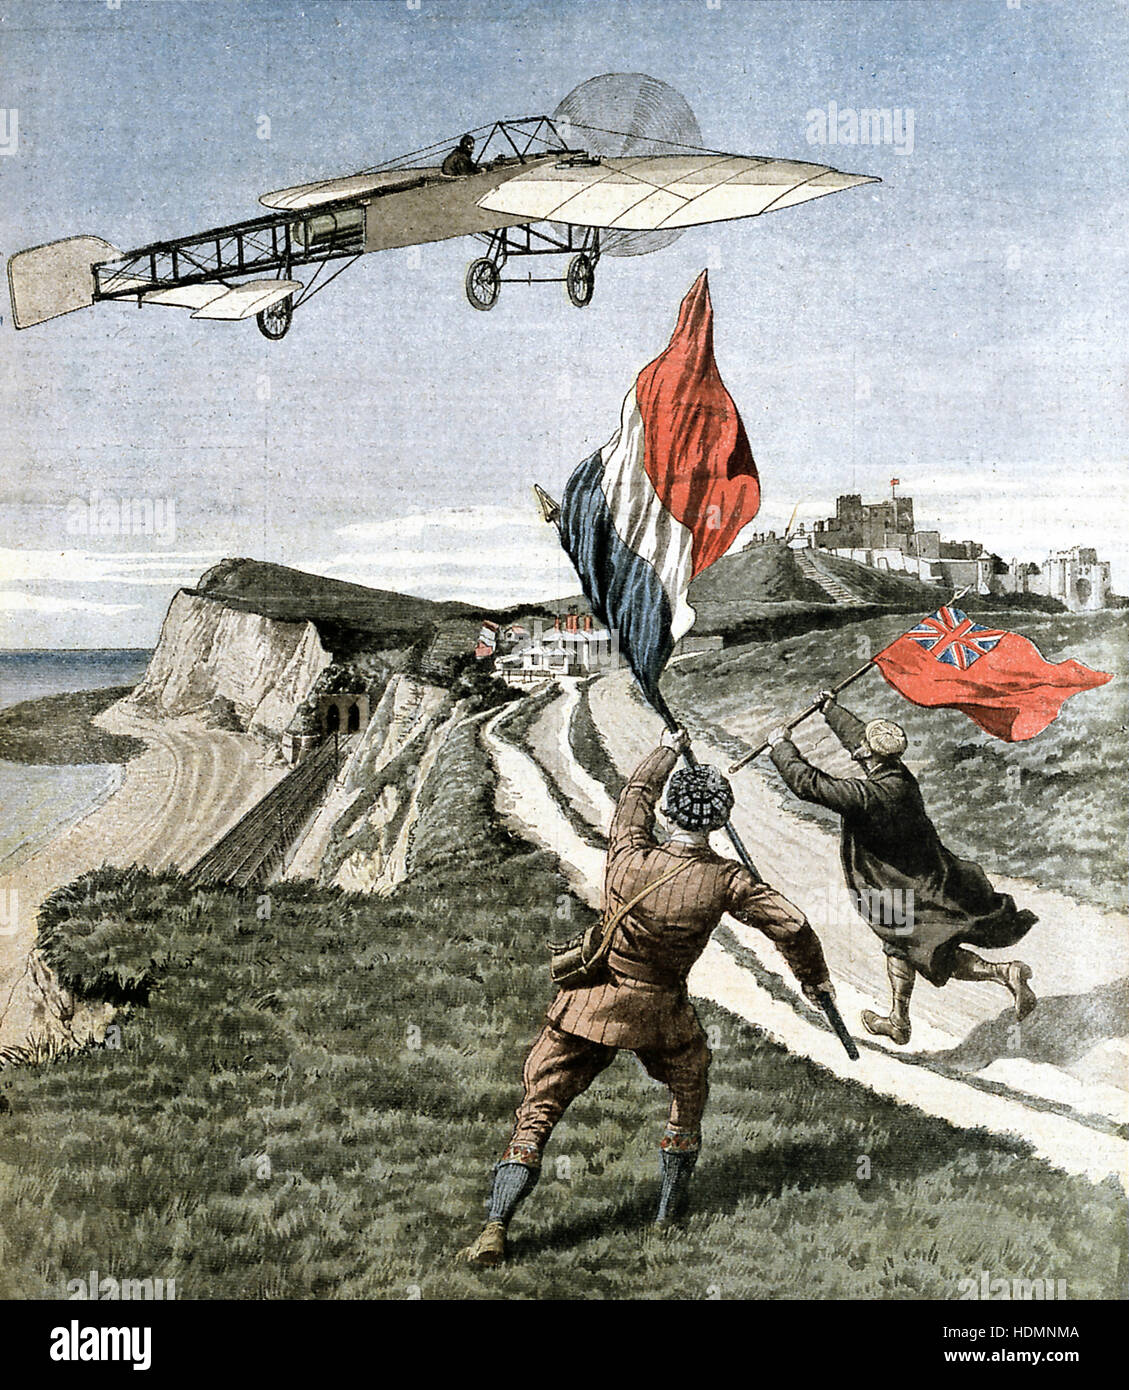 'Le Petit Journal' - Louis Blériot , aviateur français, survolant les falaises de Douvres après la traversée de la Manche Banque D'Images